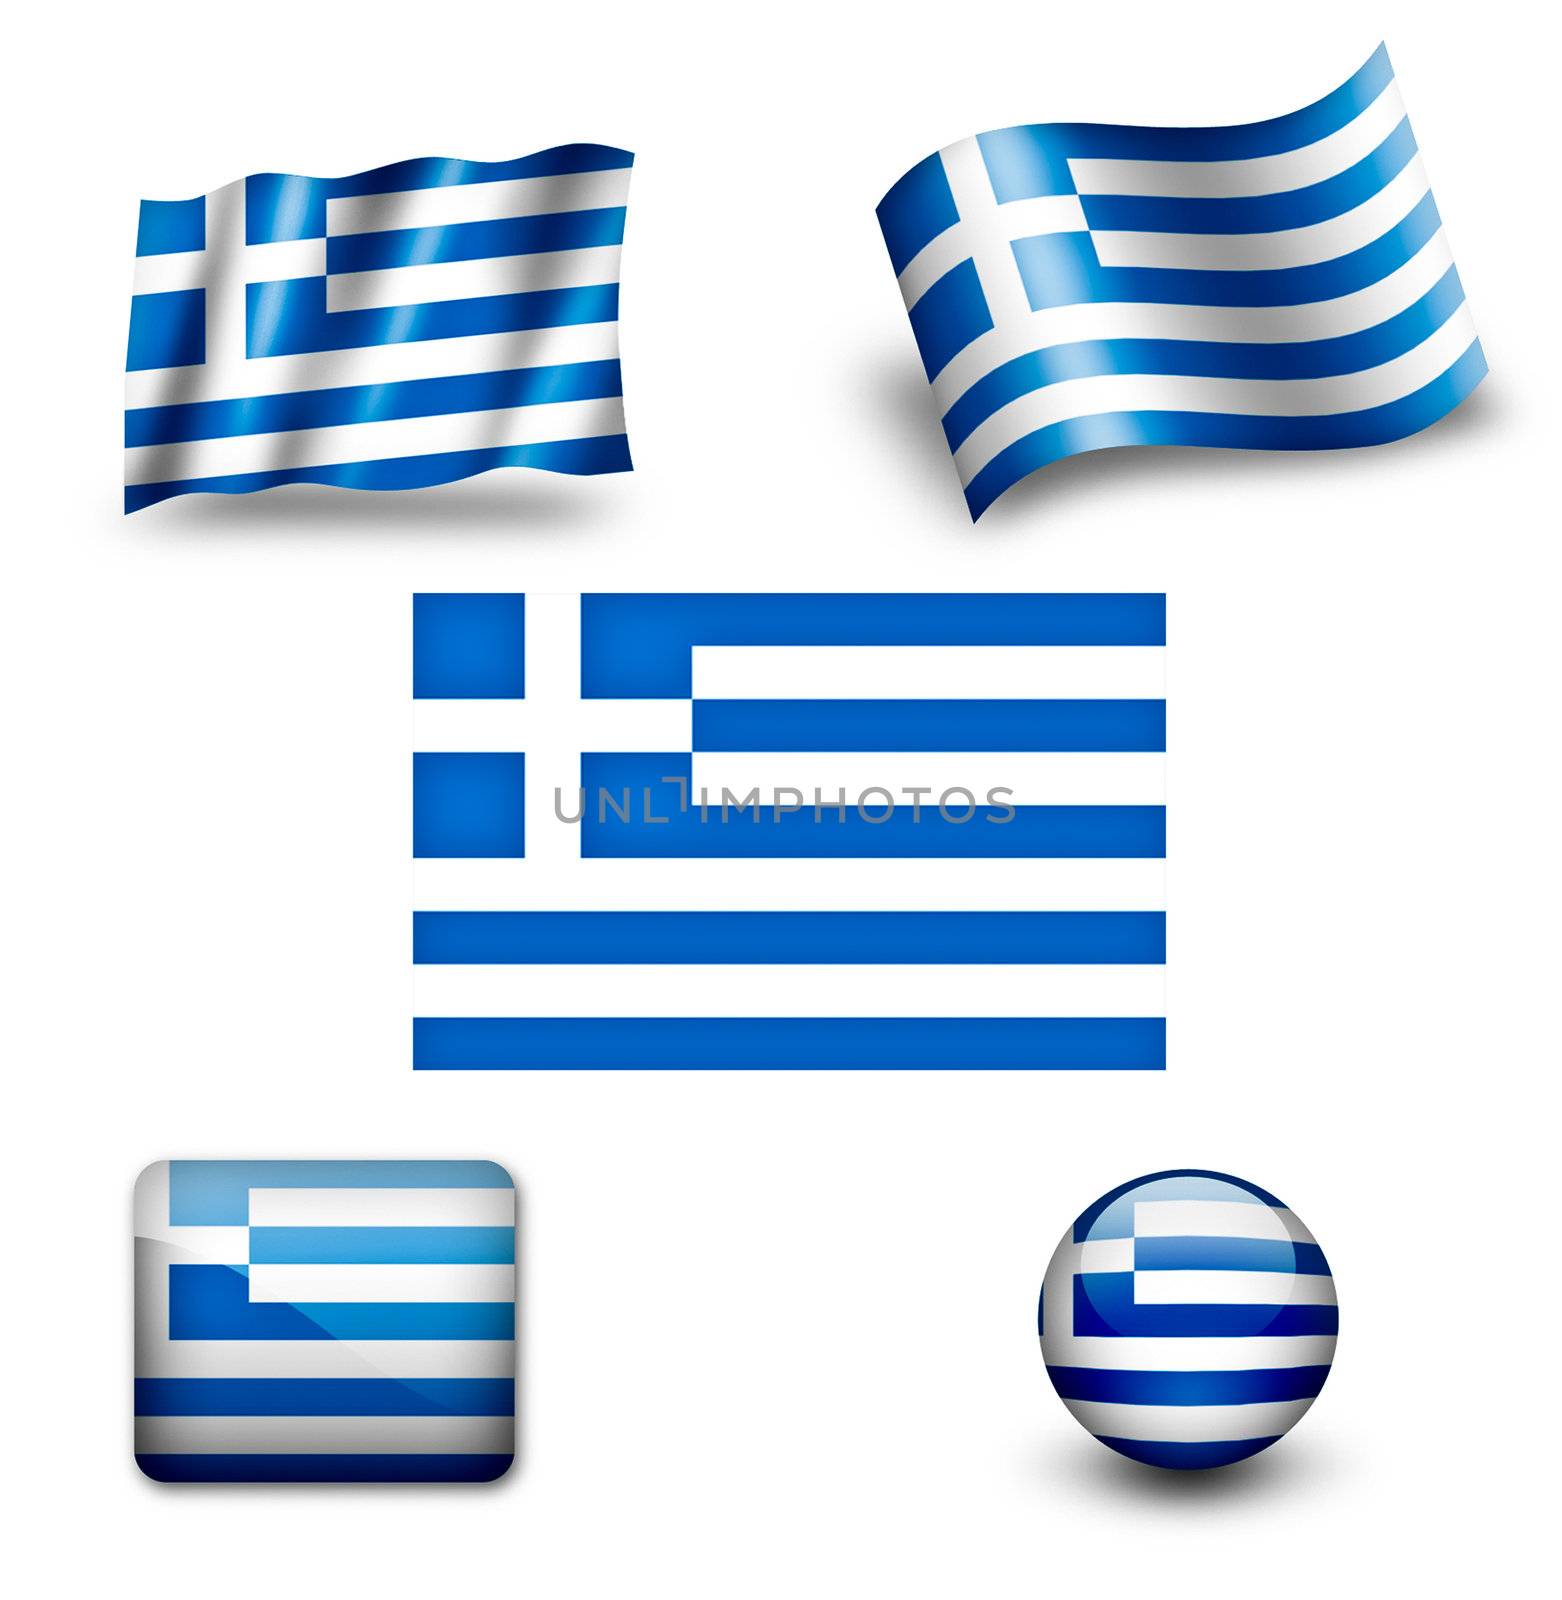 greece flag icon set